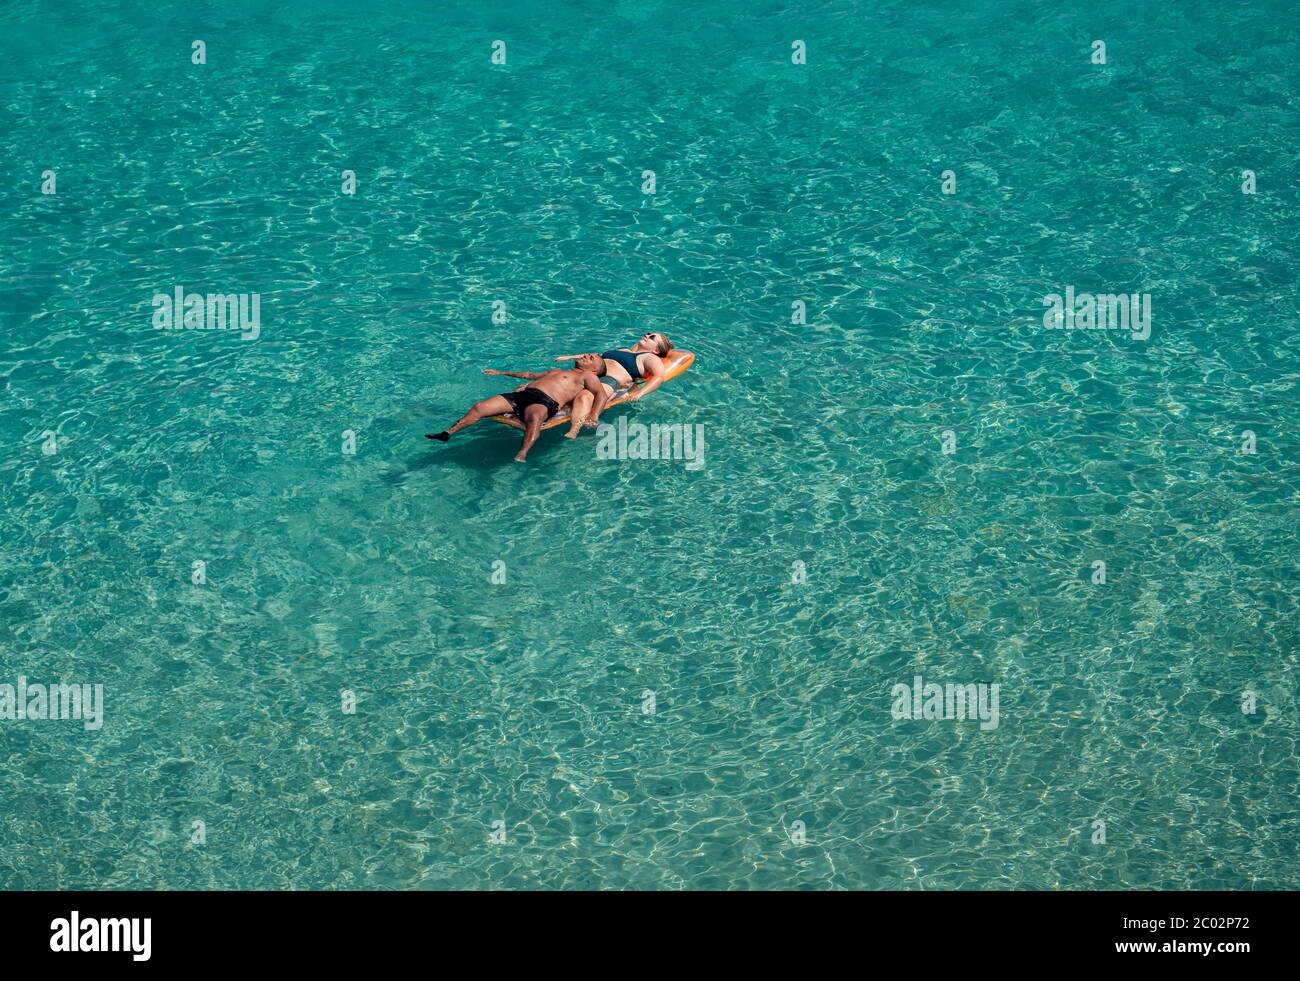 Lecce, Italia - 11 agosto 2018: Coppia di persone che galleggiano sul mare azzurro e limpido in una giornata di sole in vacanza estiva sulla costa leccese Foto Stock